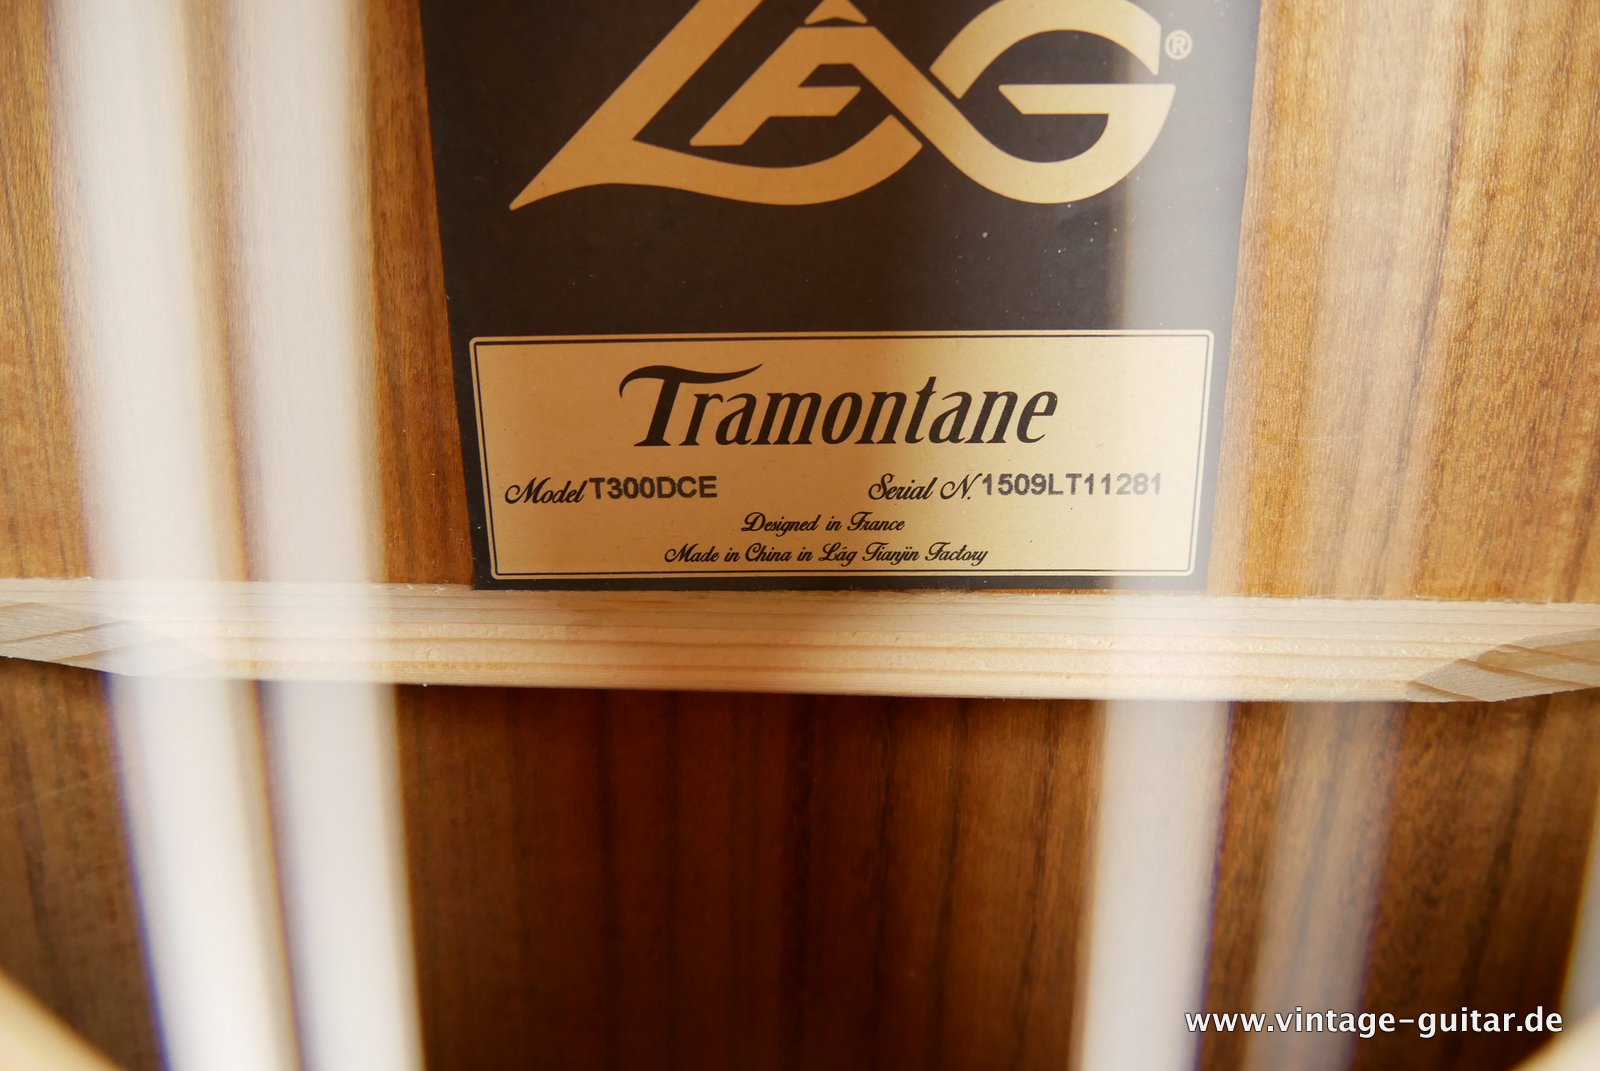 LAG-Tramontane-T300DCE-2015-013.JPG